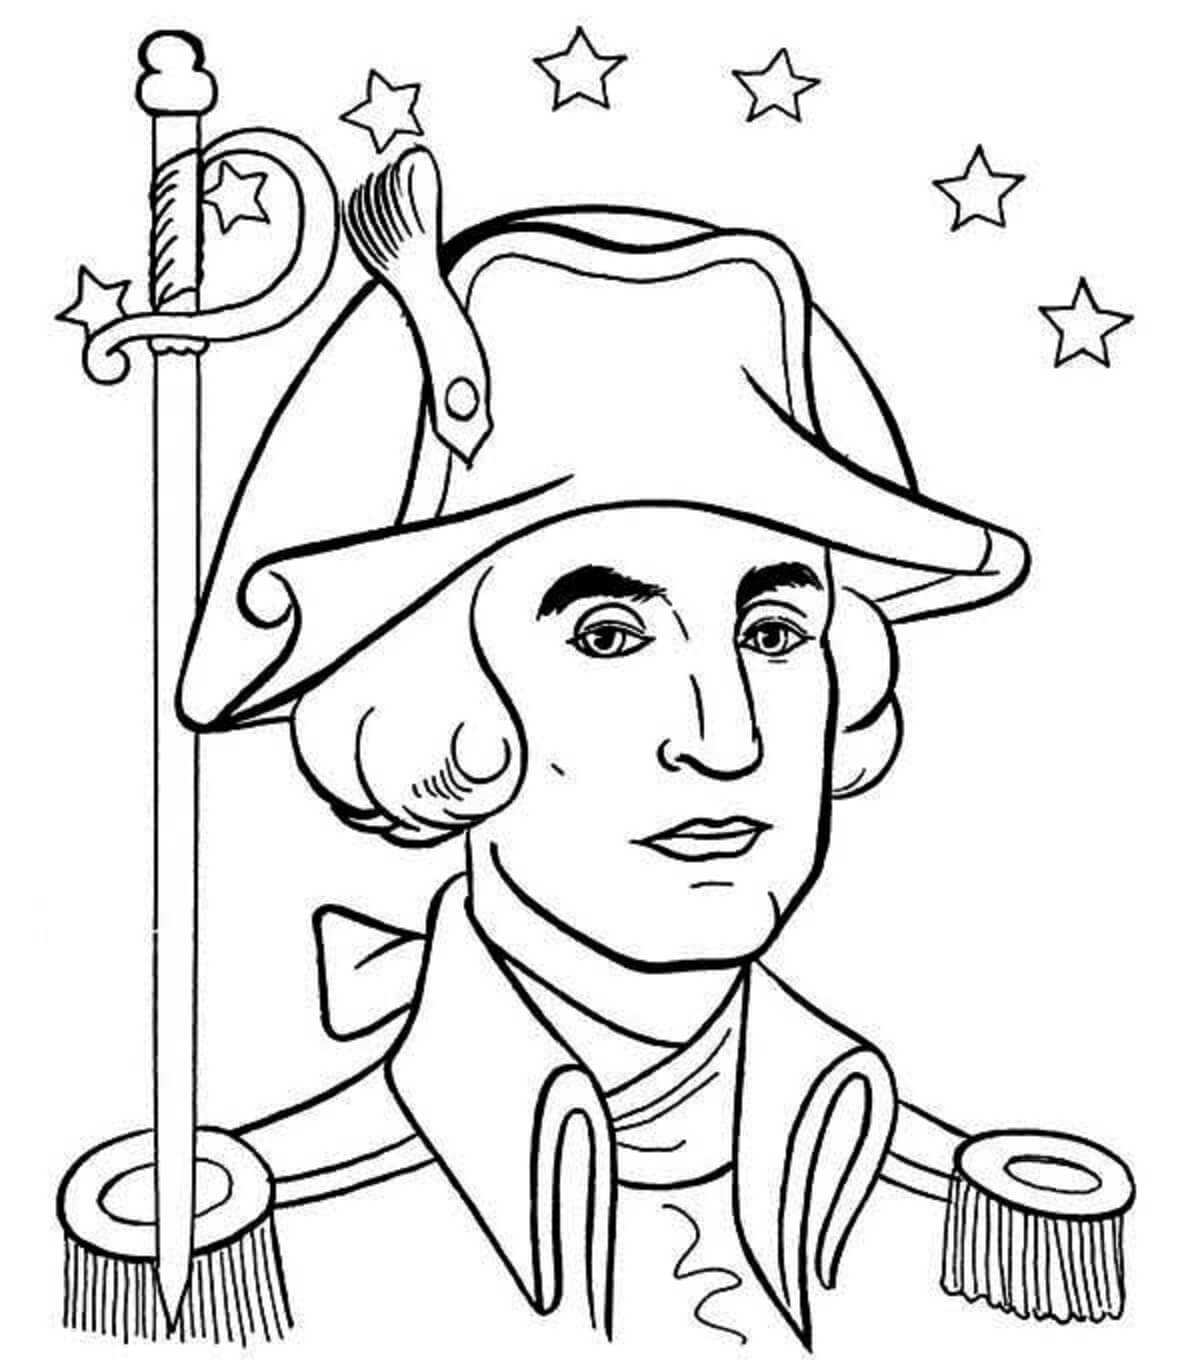 Portret van George Washington met sterren